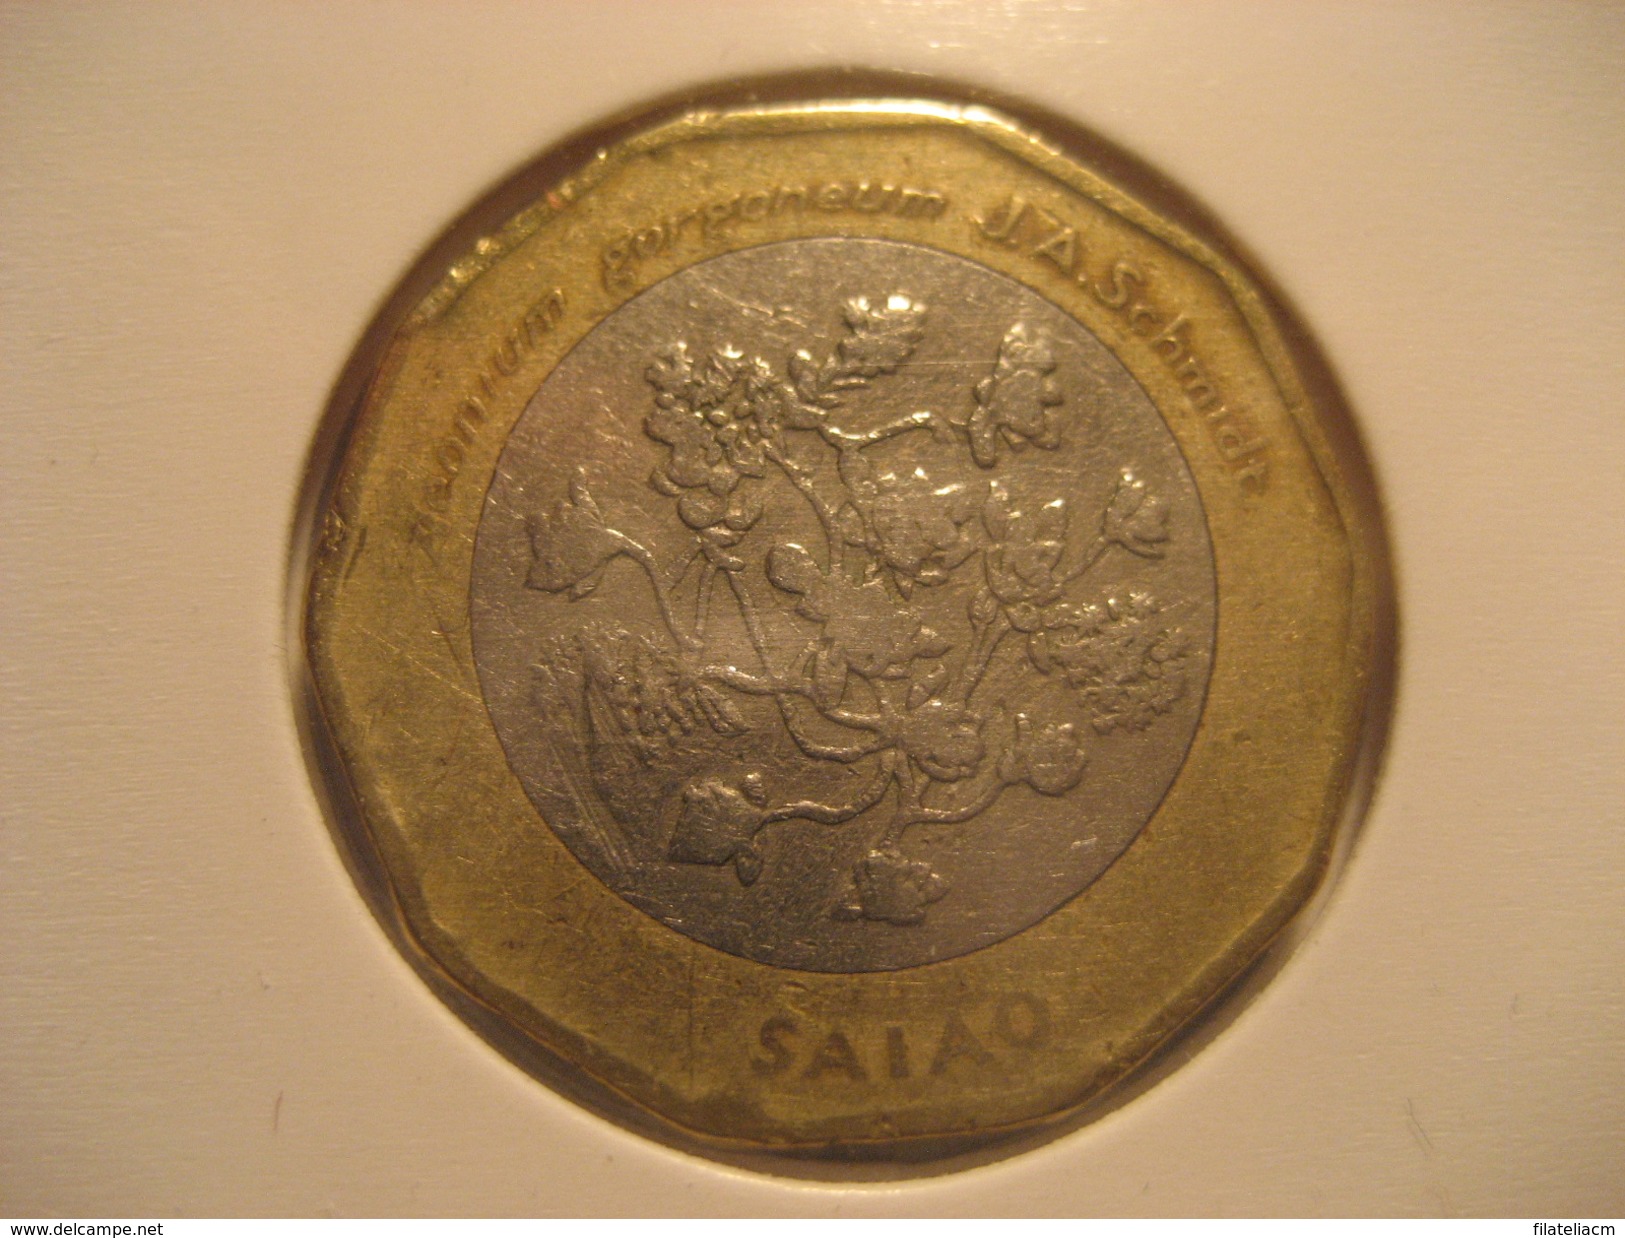 100 Escudos 1994 CAPE VERDE Bimetallic Coin Cap-Vert Cabo Verde - Cap Vert